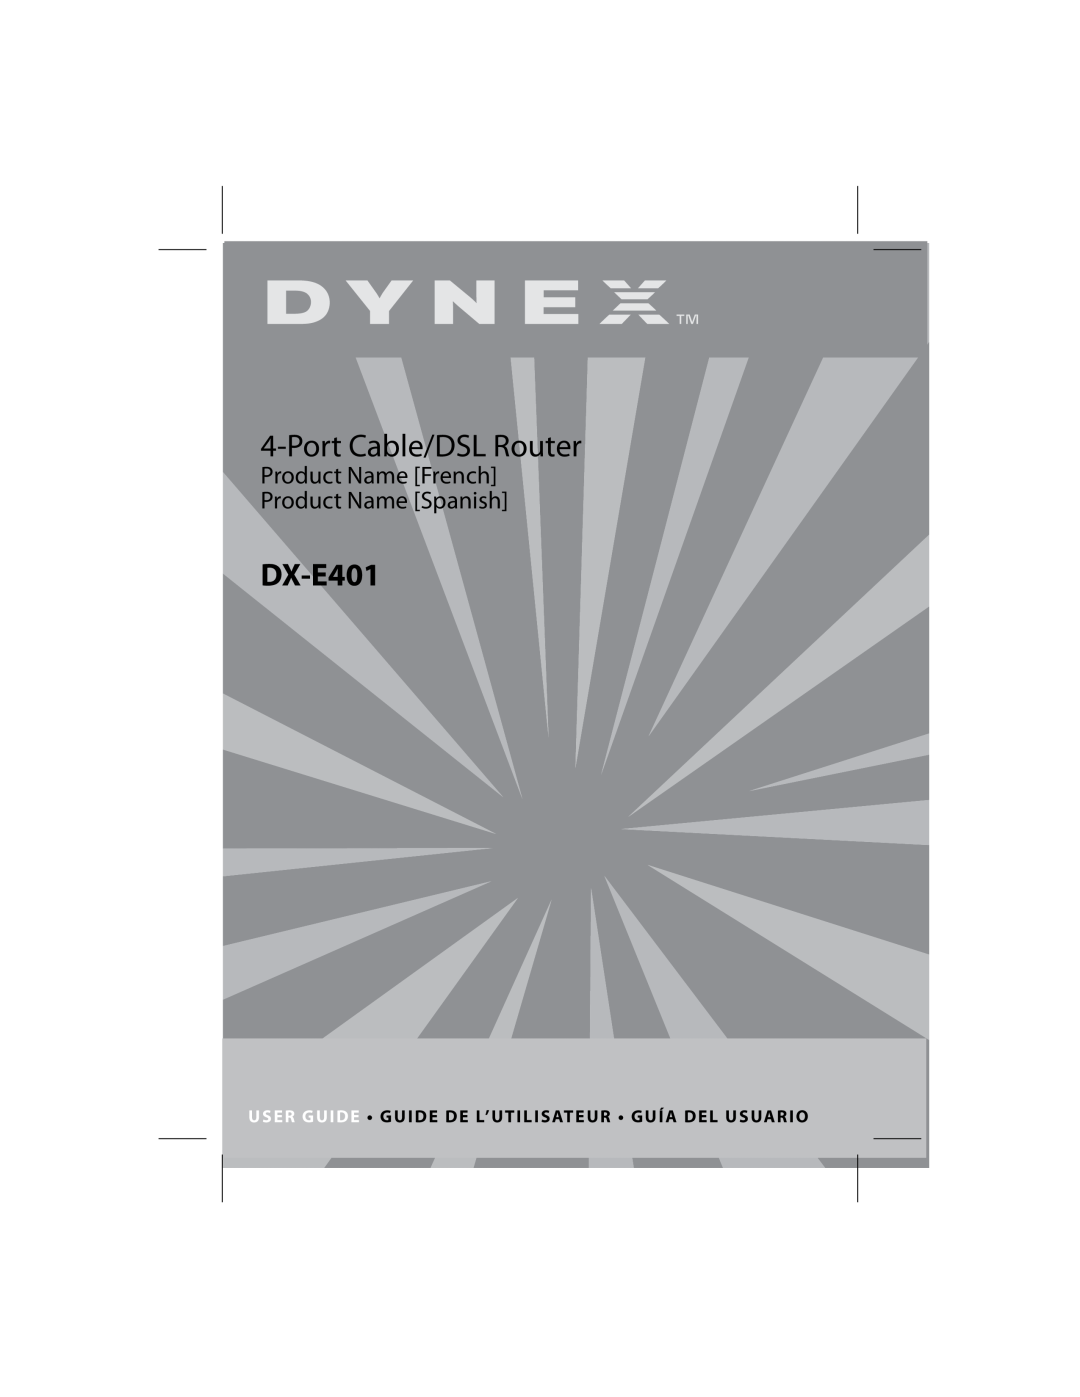 Dynex DX-E401 manual User Guide Guide De L’Utilisateur Guía Del Usuario, Port Cable/DSL Router 